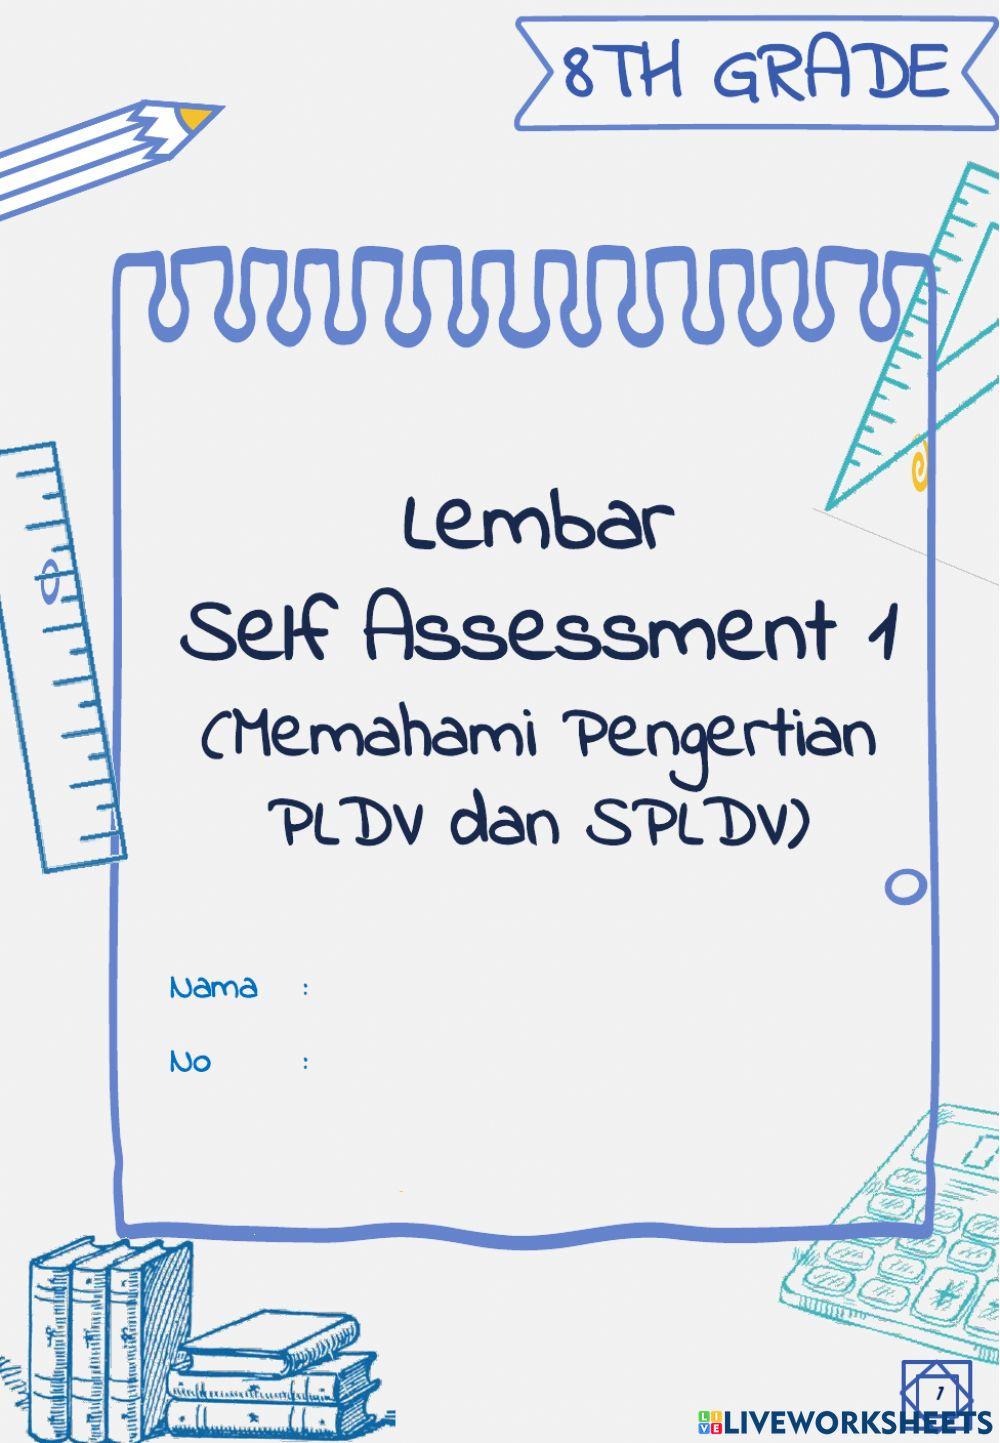 Lembar Self Assessment 1